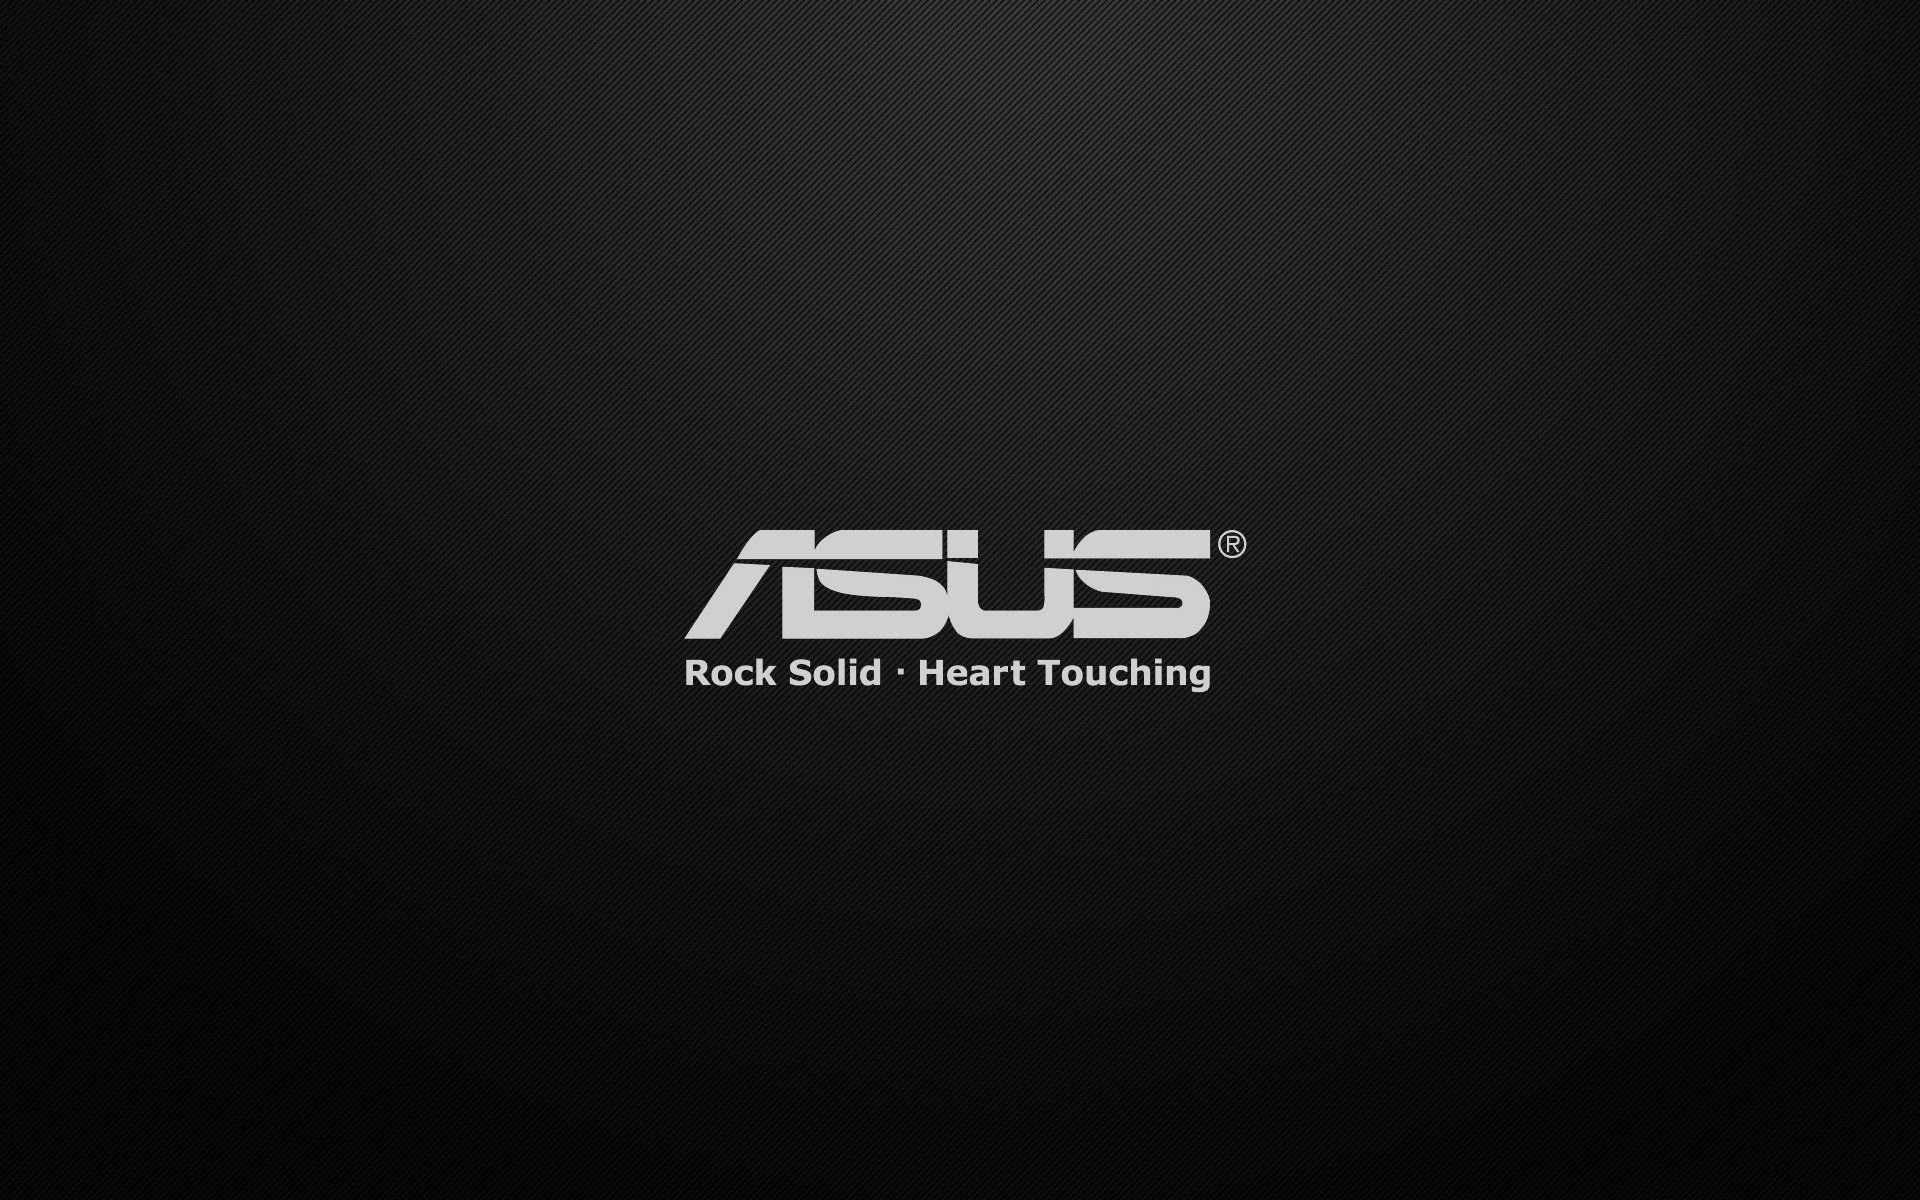 Asus ROG (Republic of Gamers) - ROG Classic Dark LOGO 4K wallpaper download